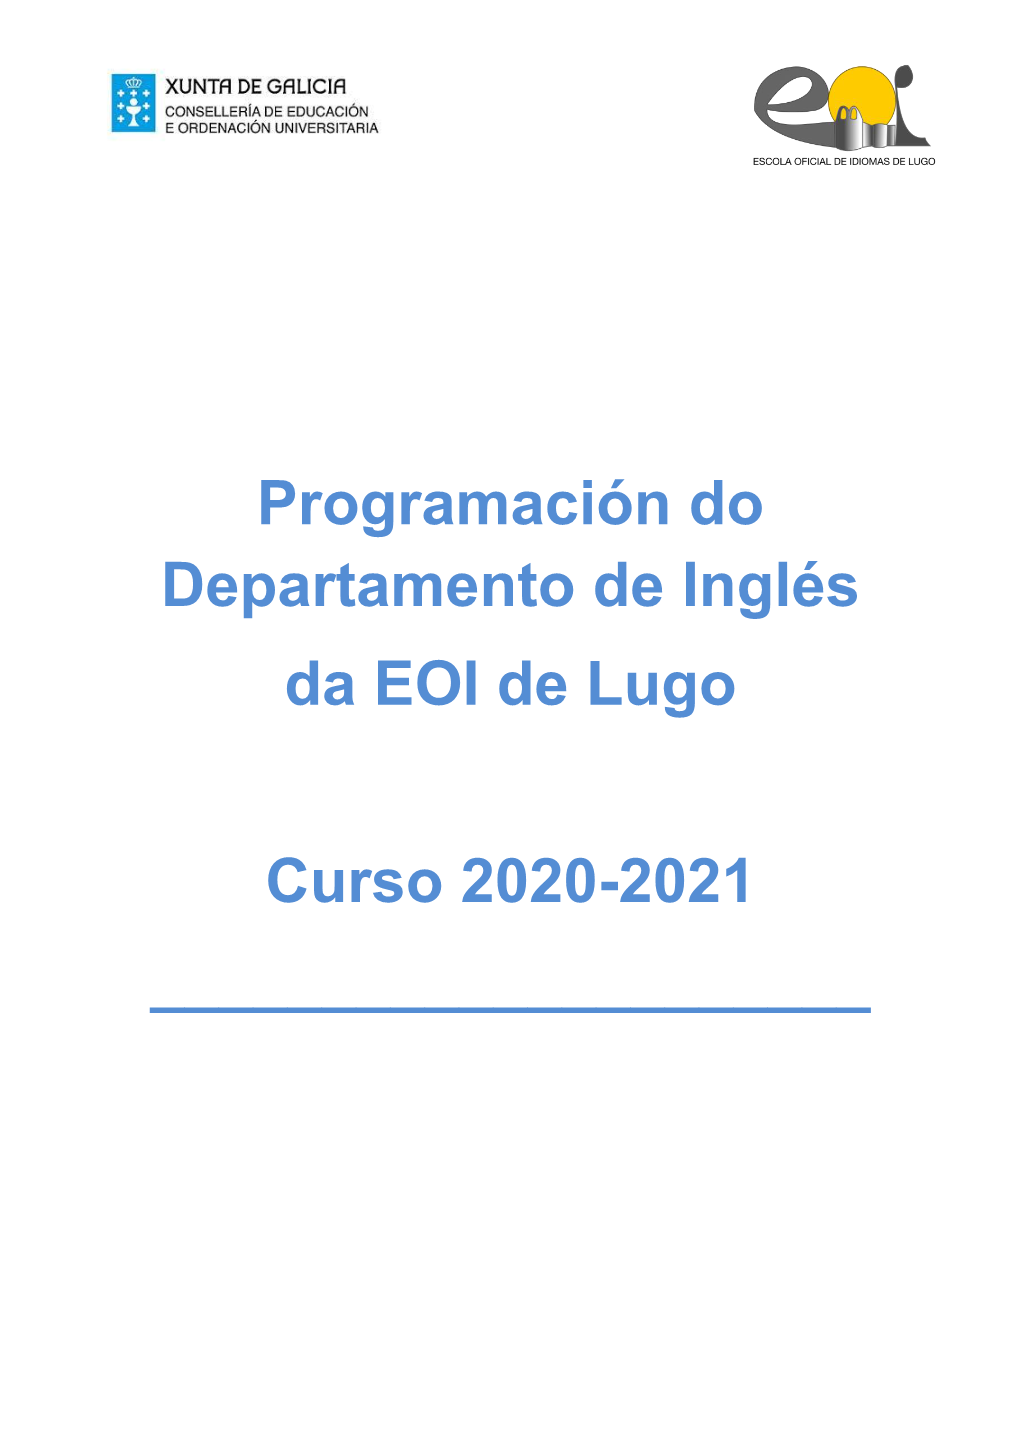 Programación Do Departamento De Inglés Da EOI De Lugo